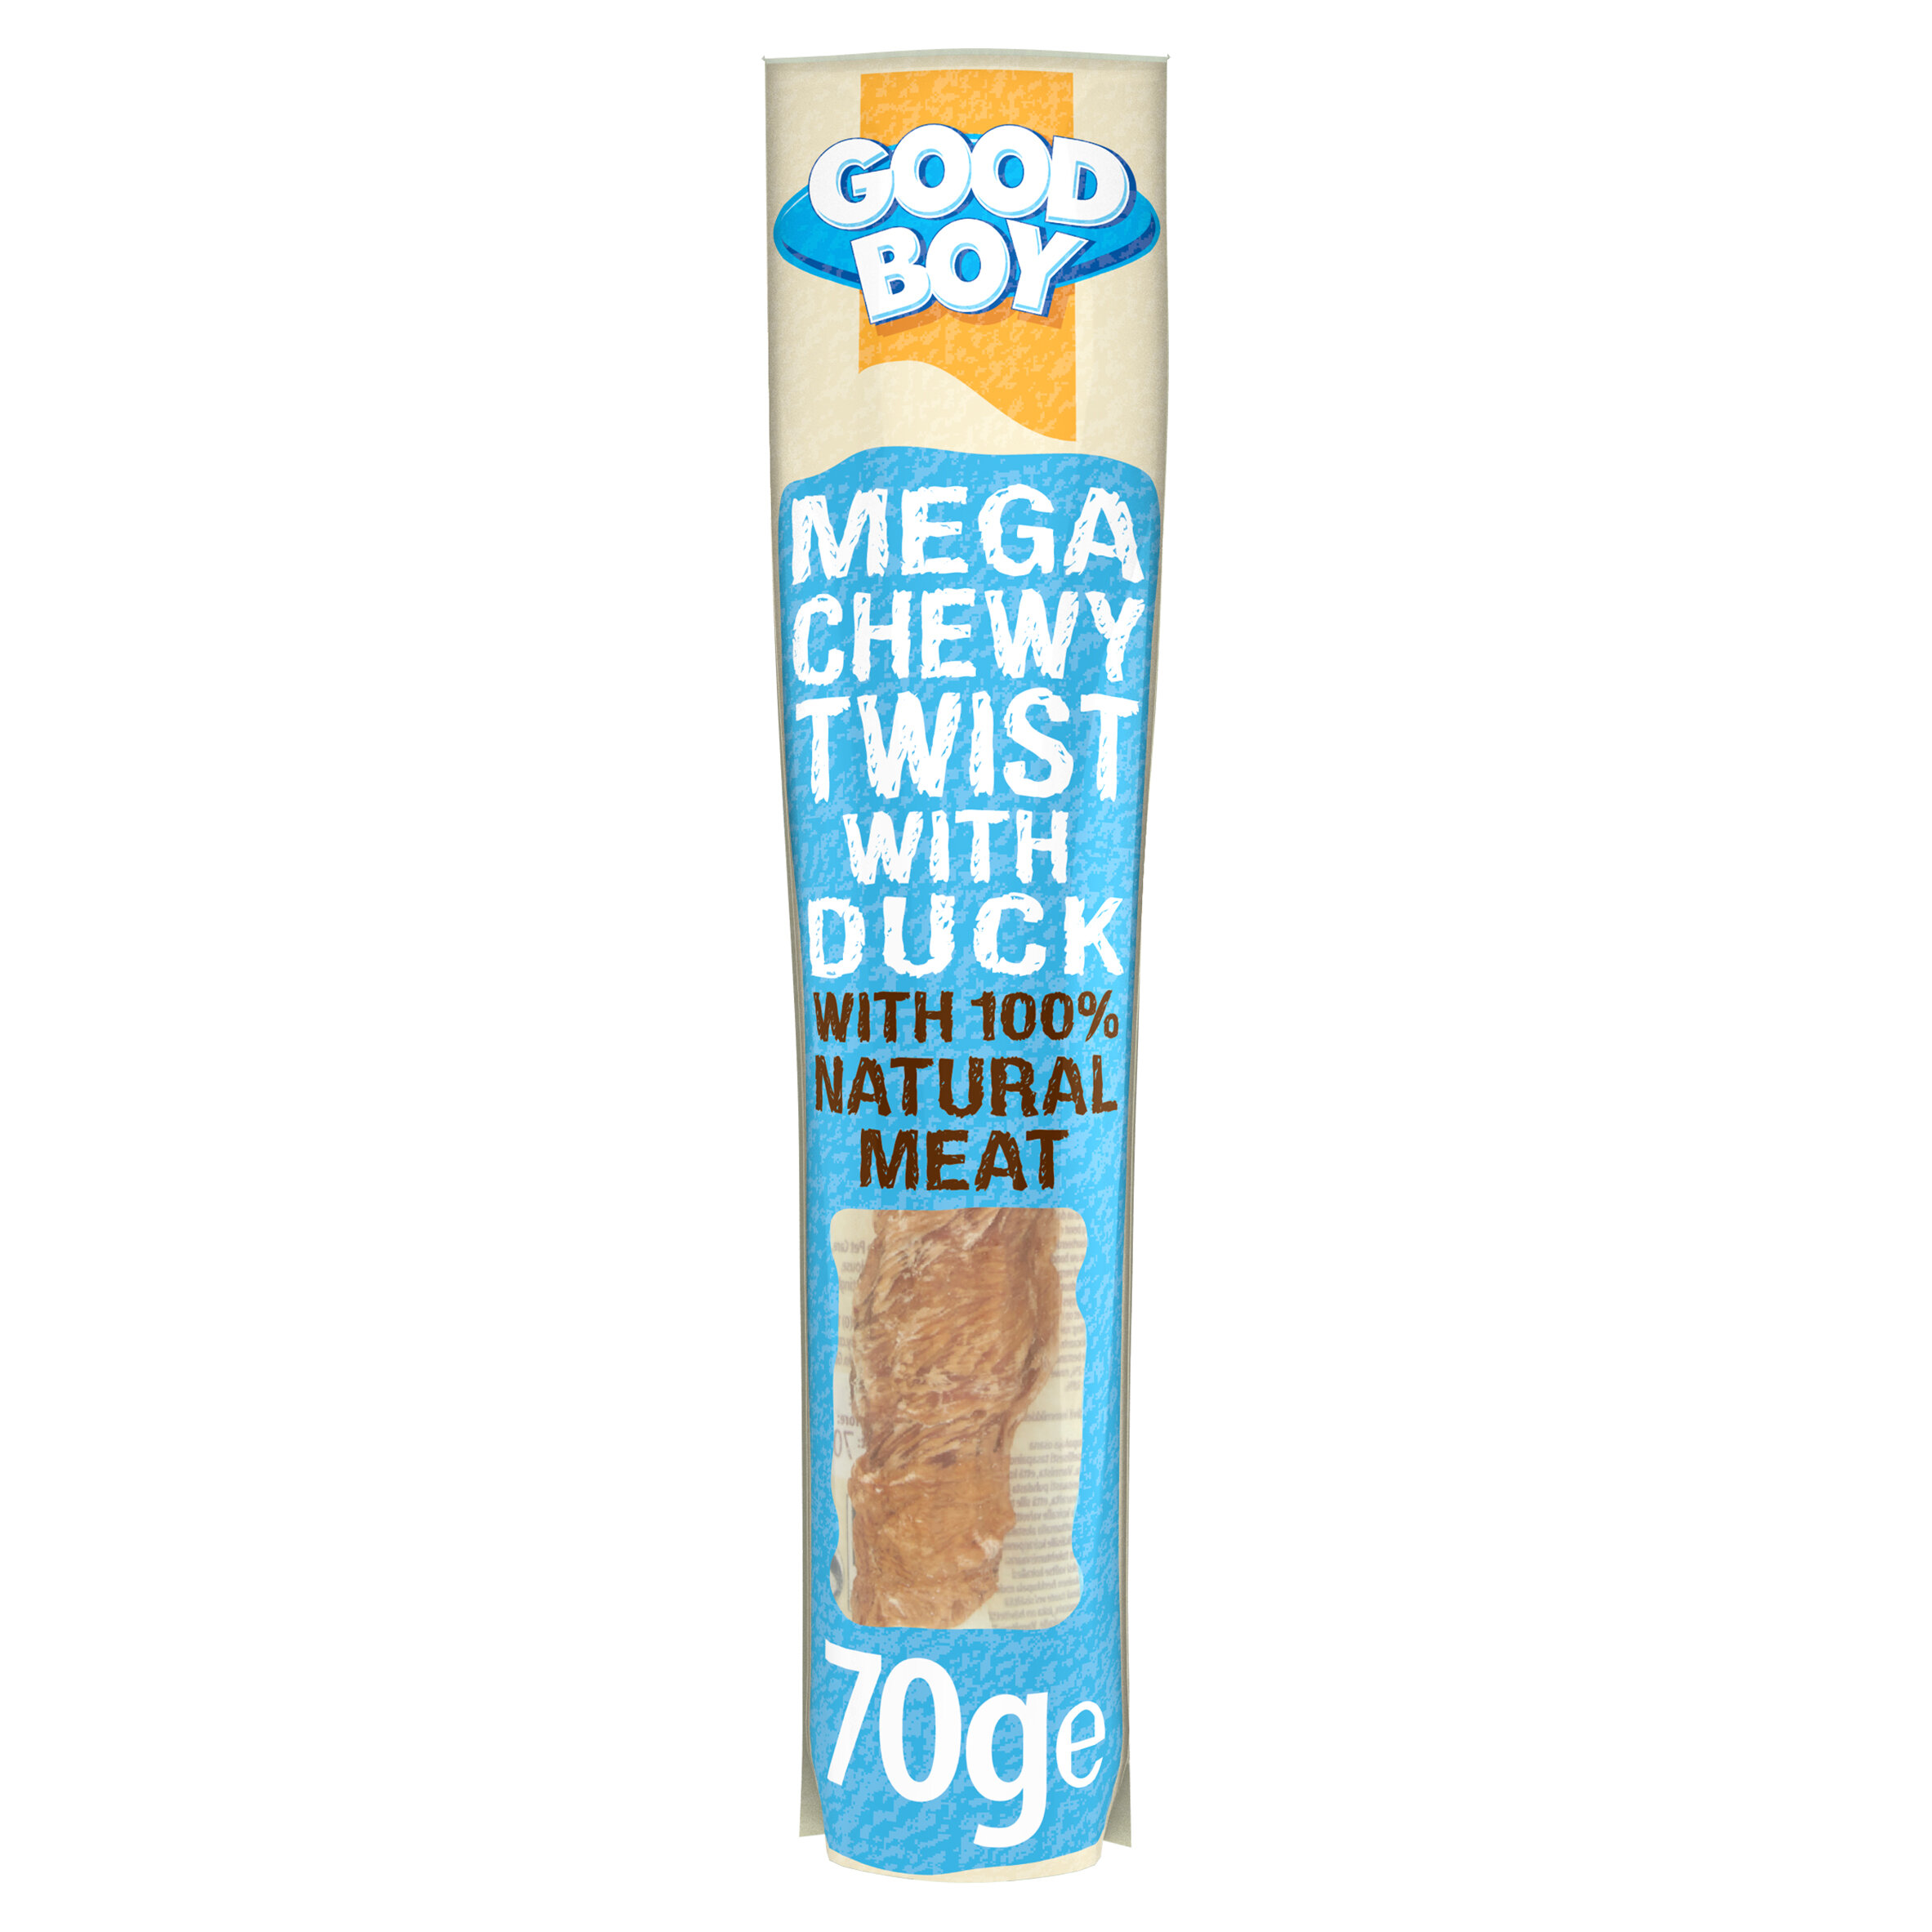 Good Boy Mega Chewy Twist with Duck 18 x 70g